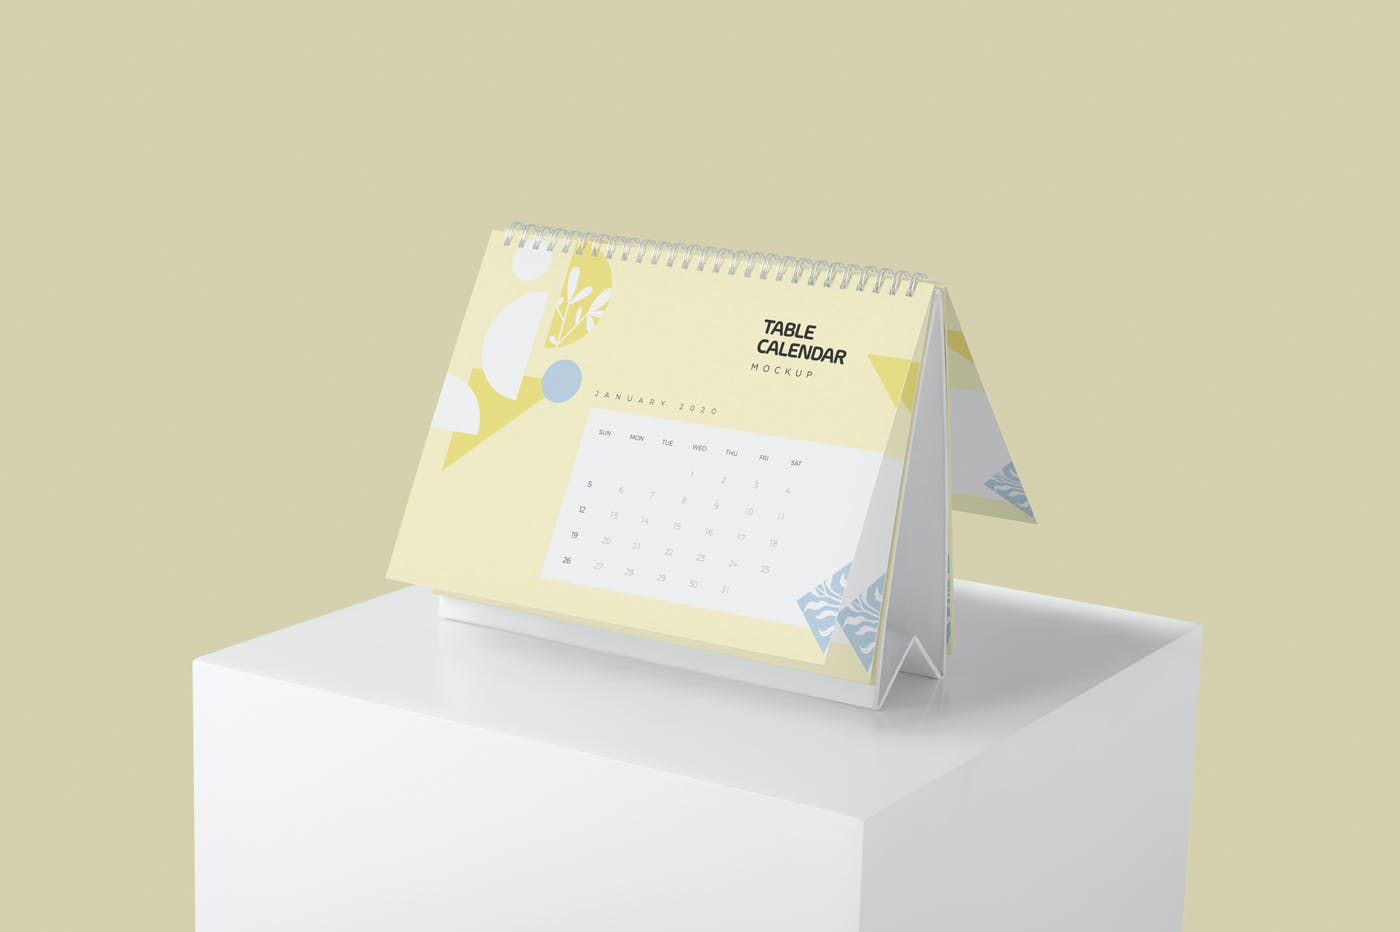 日历翻页表格设计样机模板 Table Calendar Mockups设计素材模板